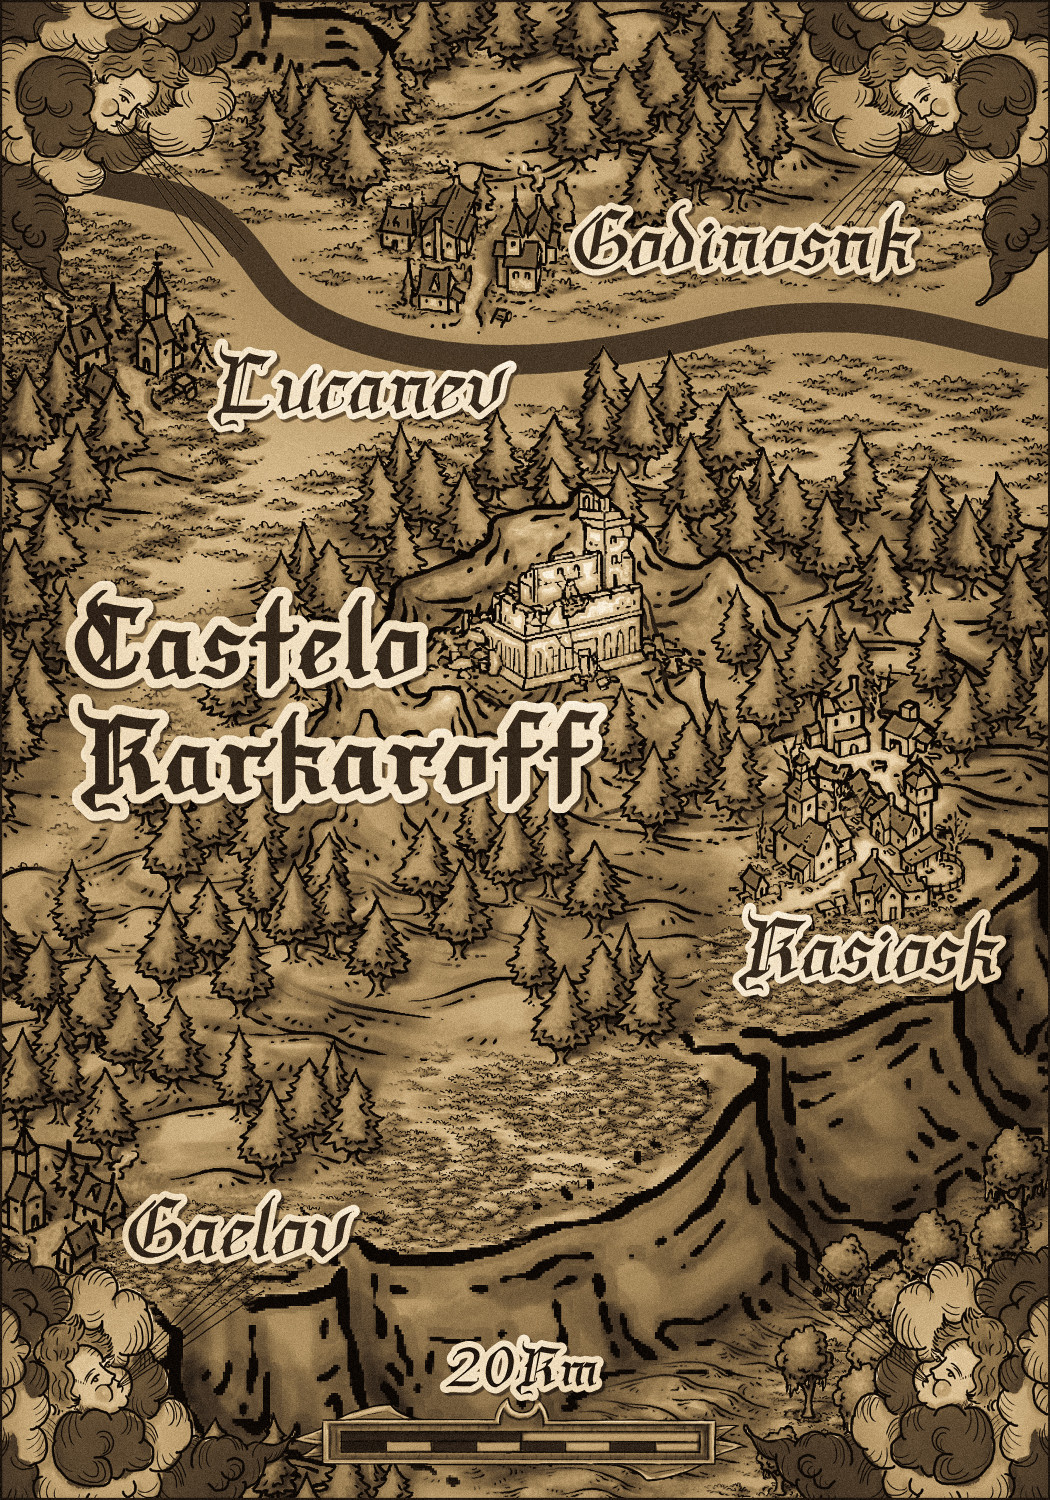 000 03 mapa local castelo karkaroff.jpg